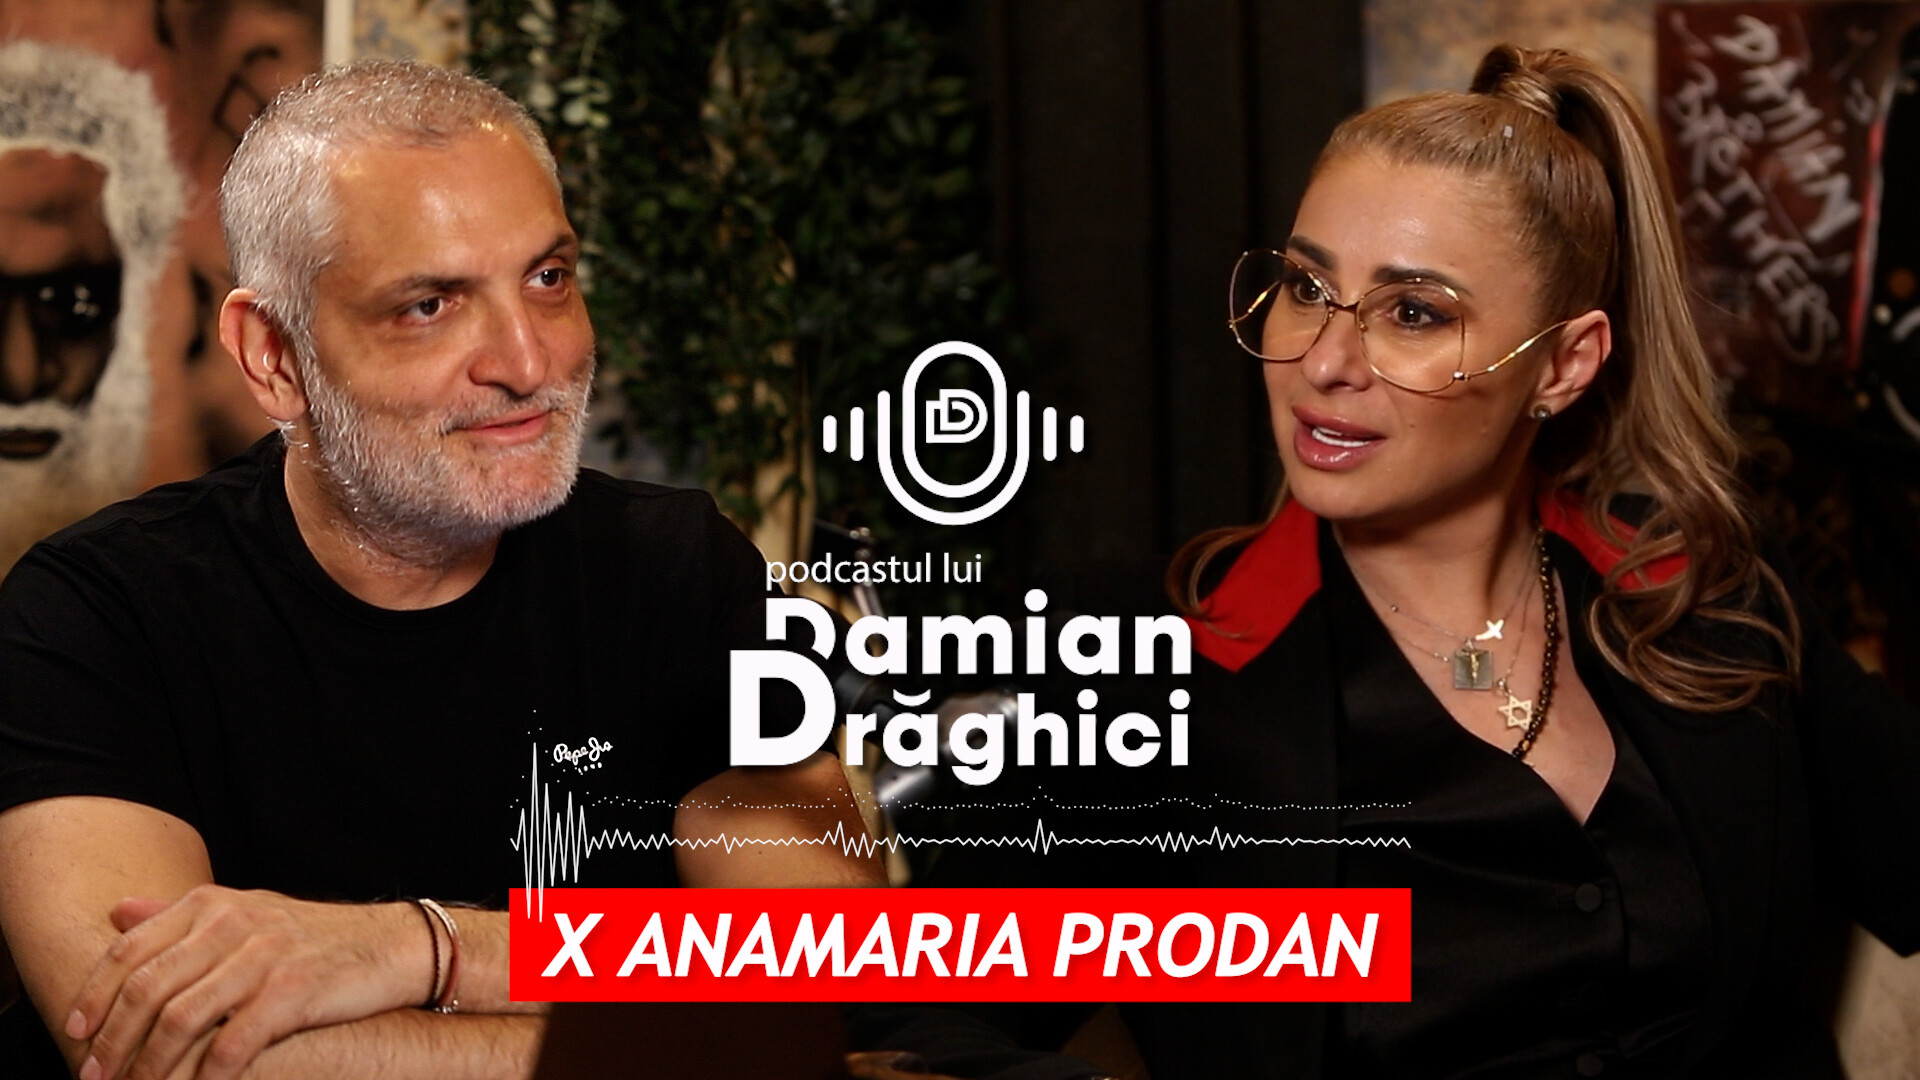 Ana Maria Prodan la podcastul lui Damian Drăghici, pe Voyo